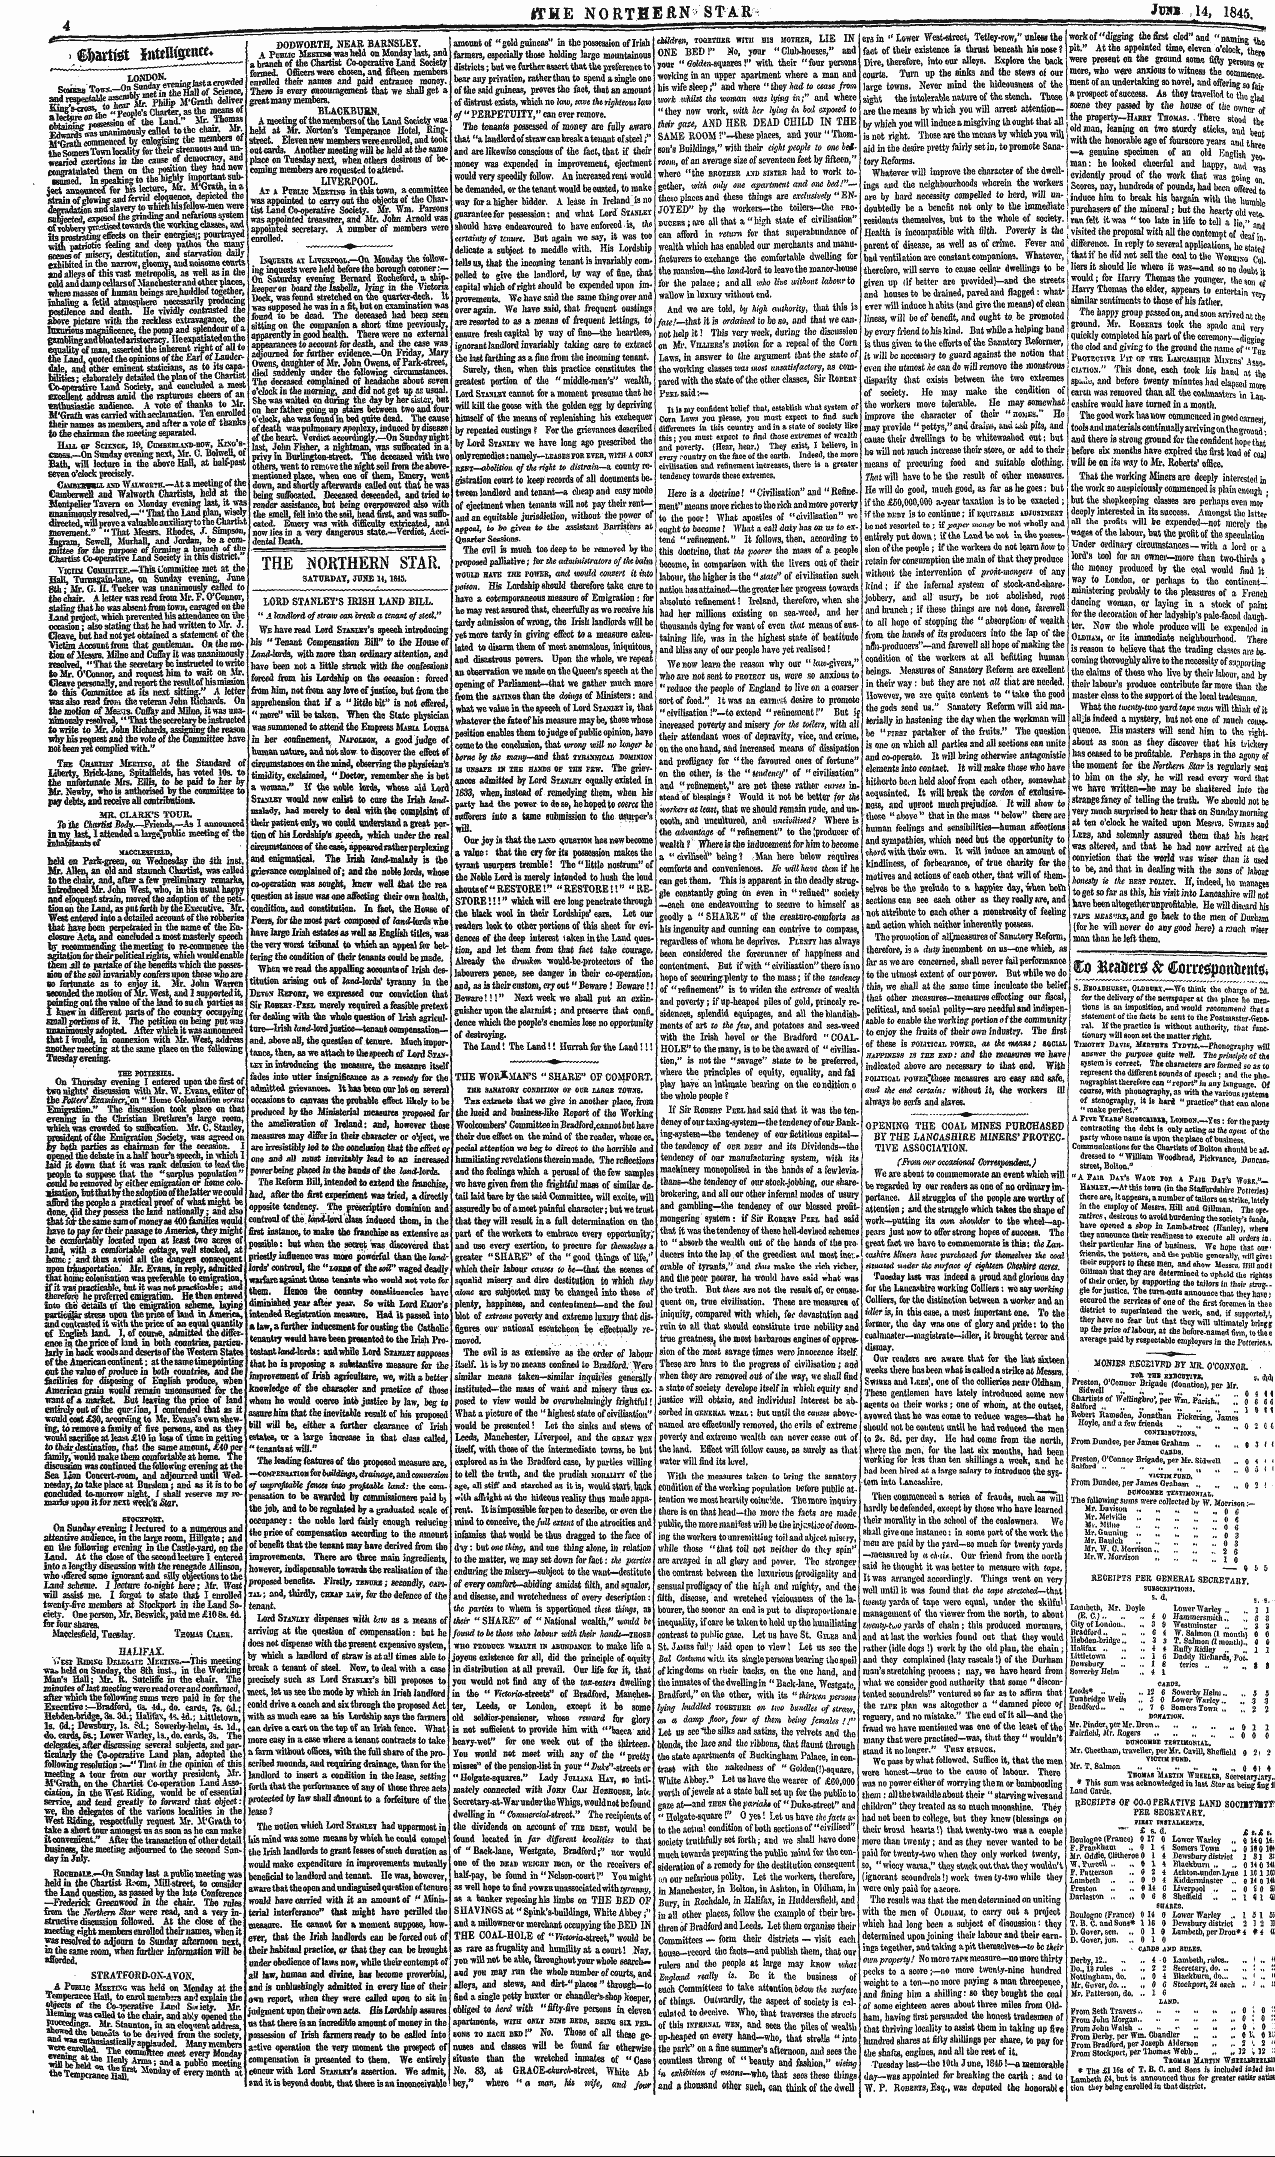 Northern Star (1837-1852): jS F Y, 3rd edition - Siaitfet Iiutuisettw* ^^